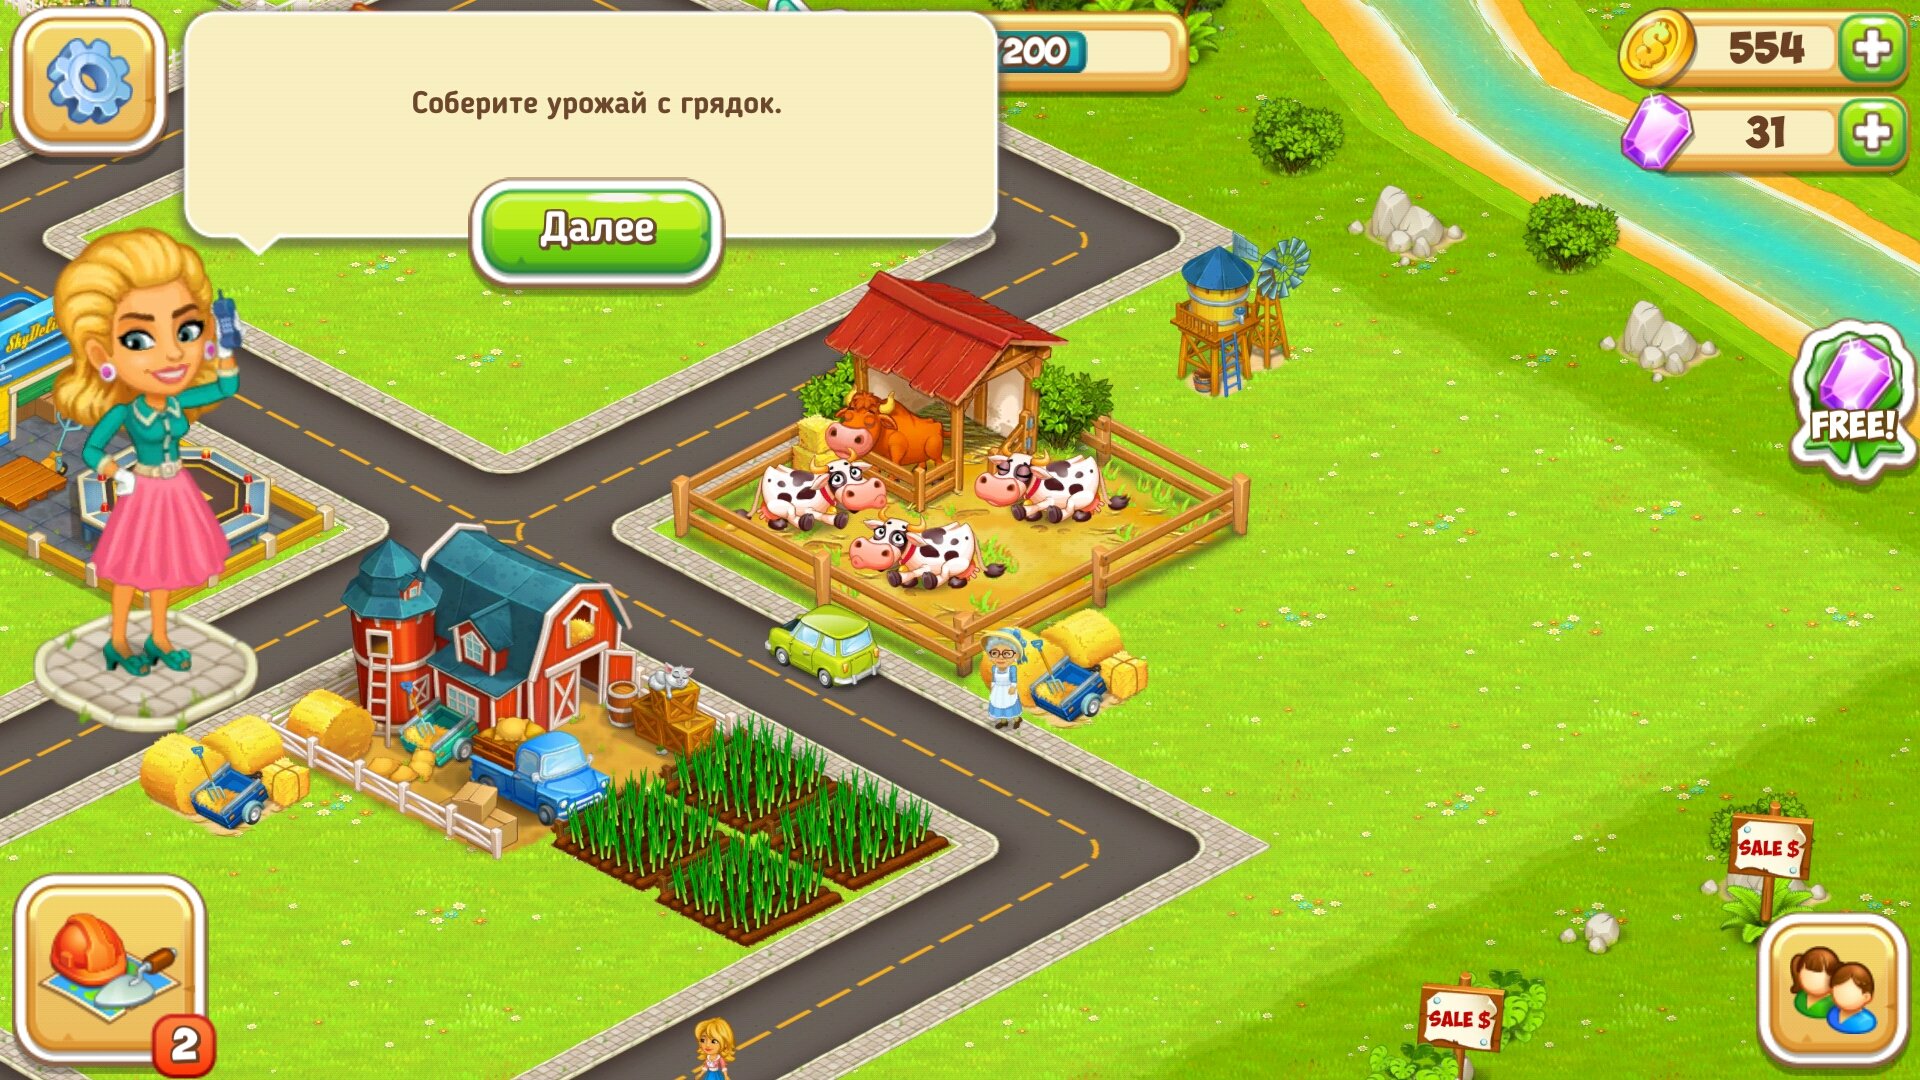 МОД: Много денег, Бесконечные ресурсы] Cartoon City 2: Farm to Town -  Android games - Download free. Cartoon City 2: Farm to Town - Farm frenzy